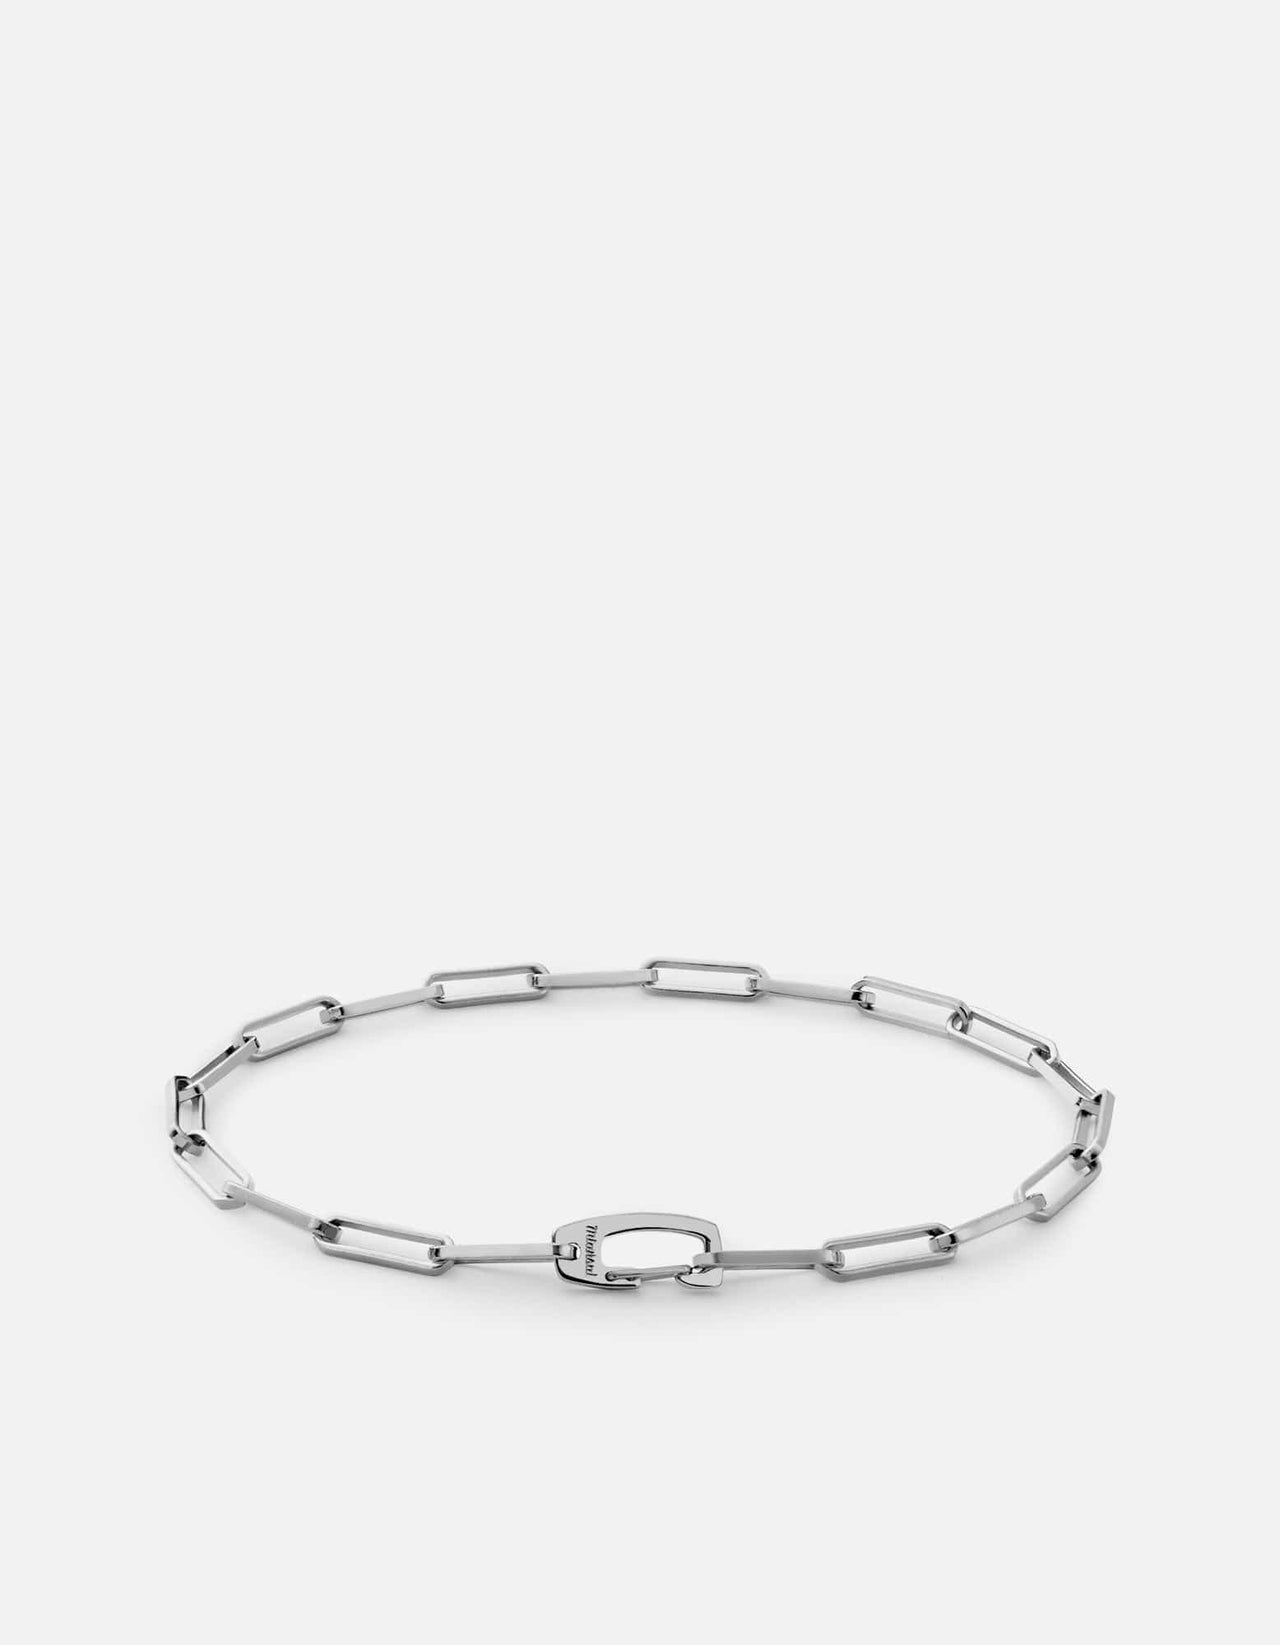 Miansai Men's Clip Volt Link Bracelet, Sterling Silver, Size M